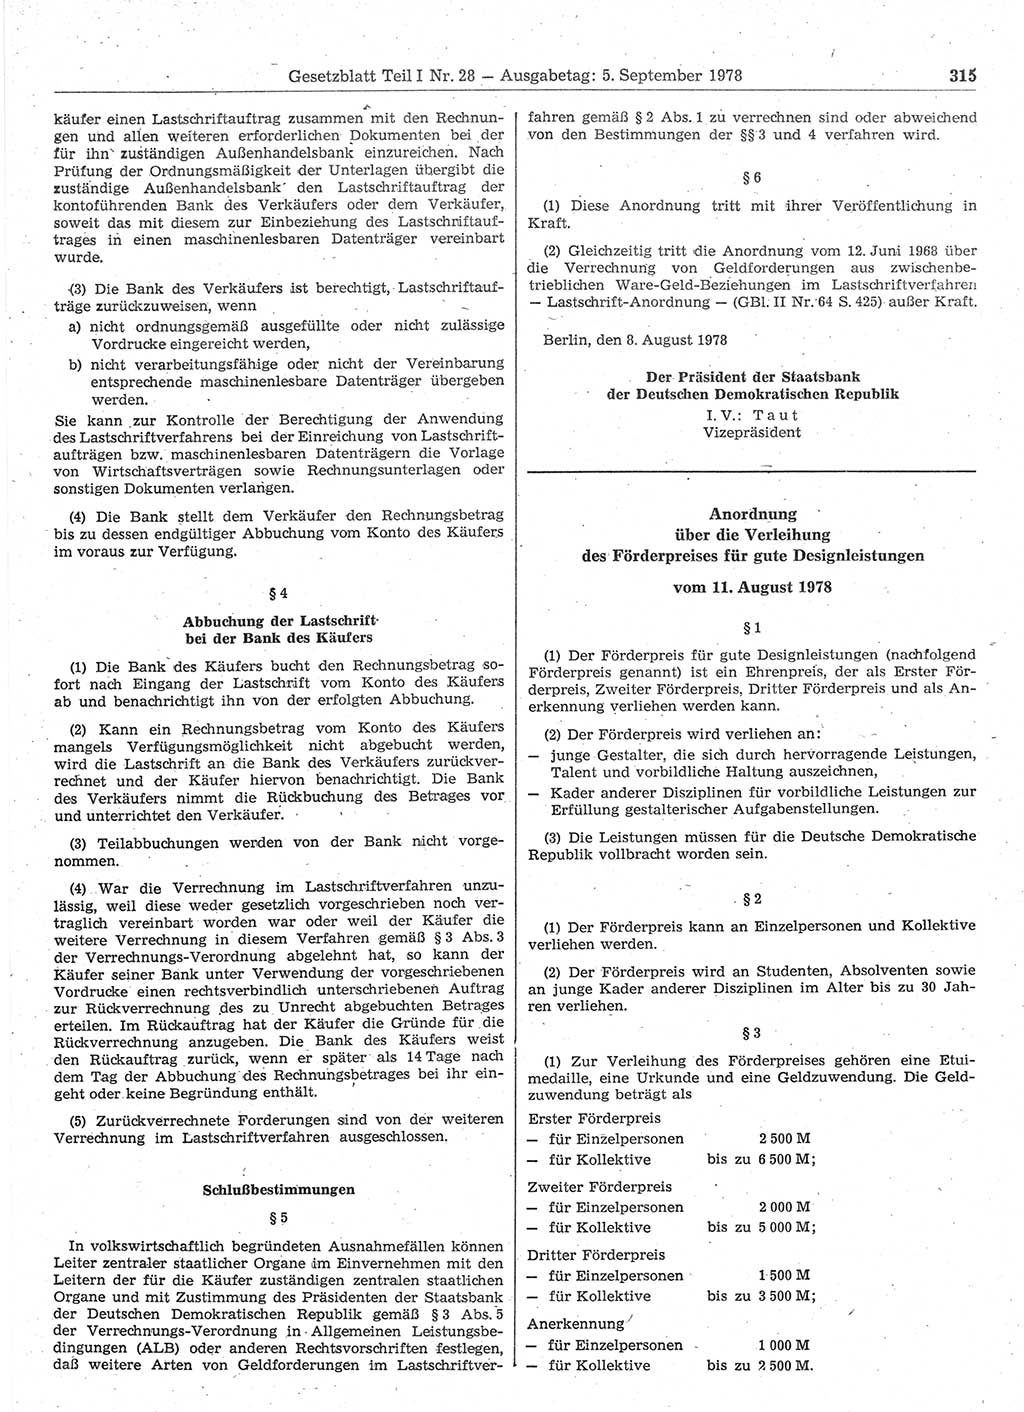 Gesetzblatt (GBl.) der Deutschen Demokratischen Republik (DDR) Teil Ⅰ 1978, Seite 315 (GBl. DDR Ⅰ 1978, S. 315)